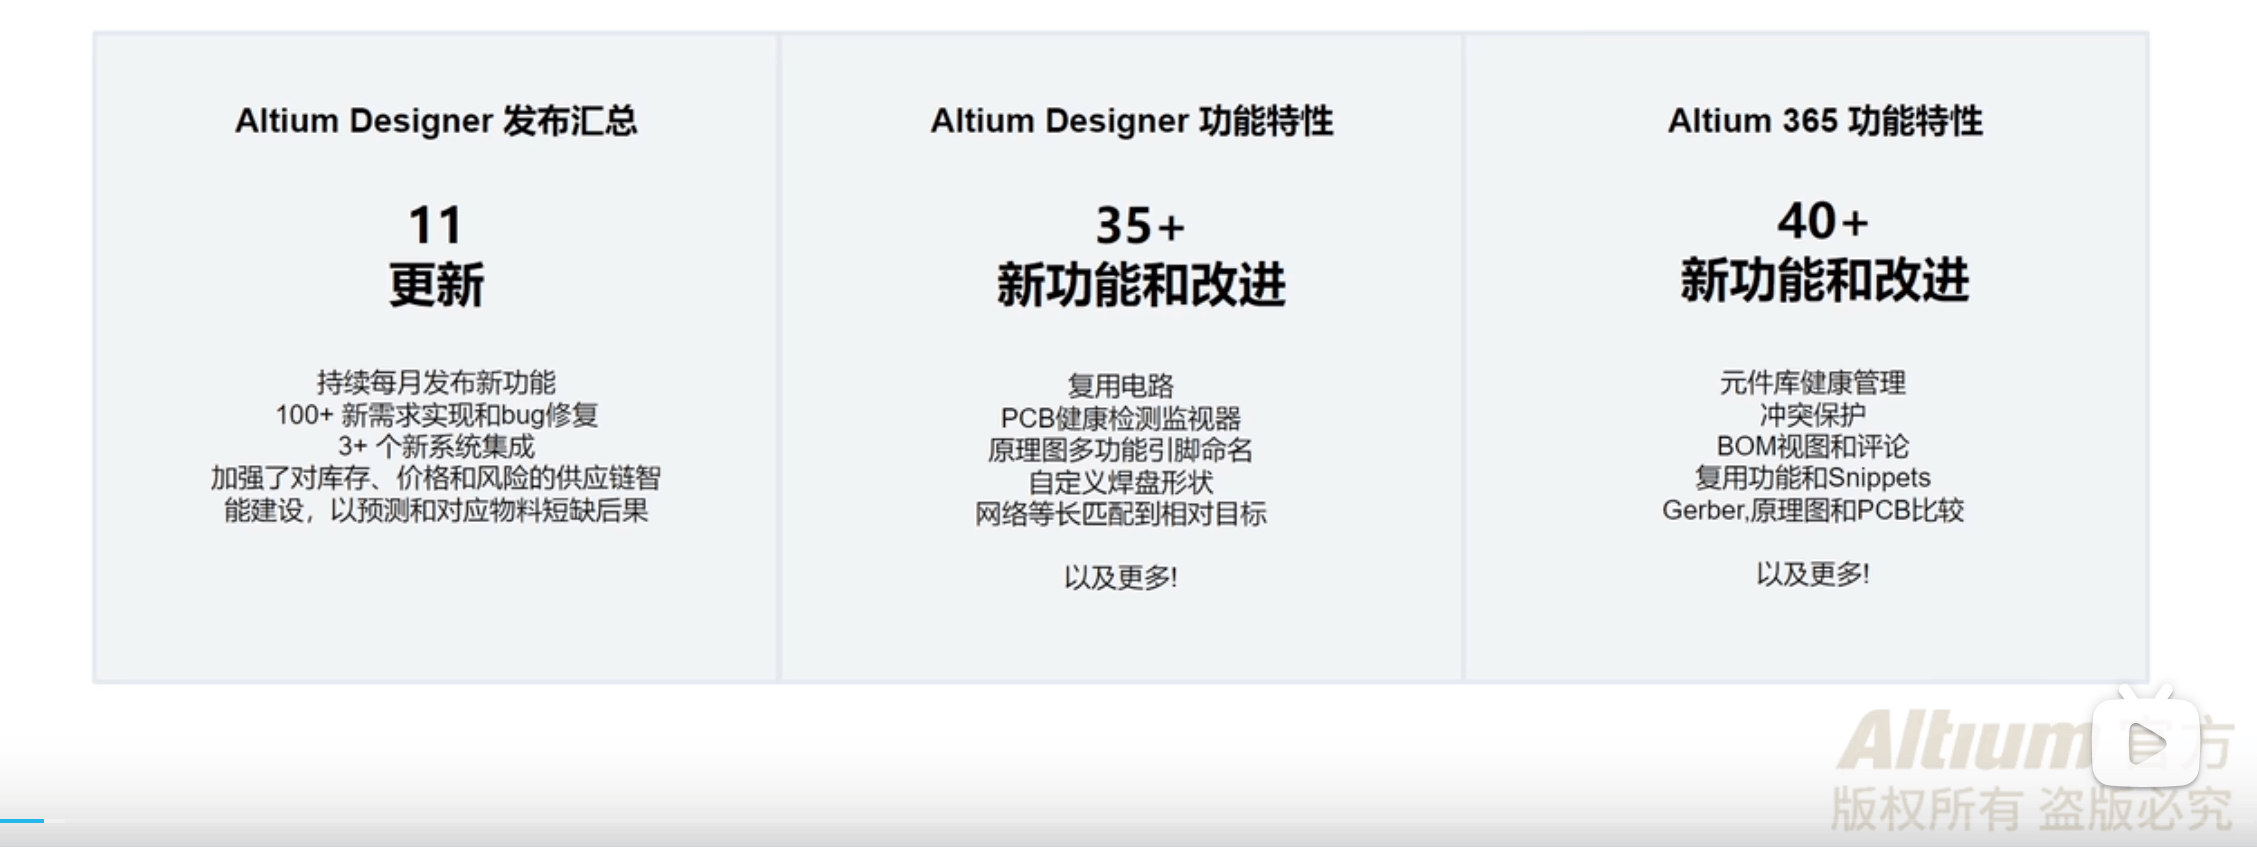 download the new for apple Altium Designer 23.9.2.47